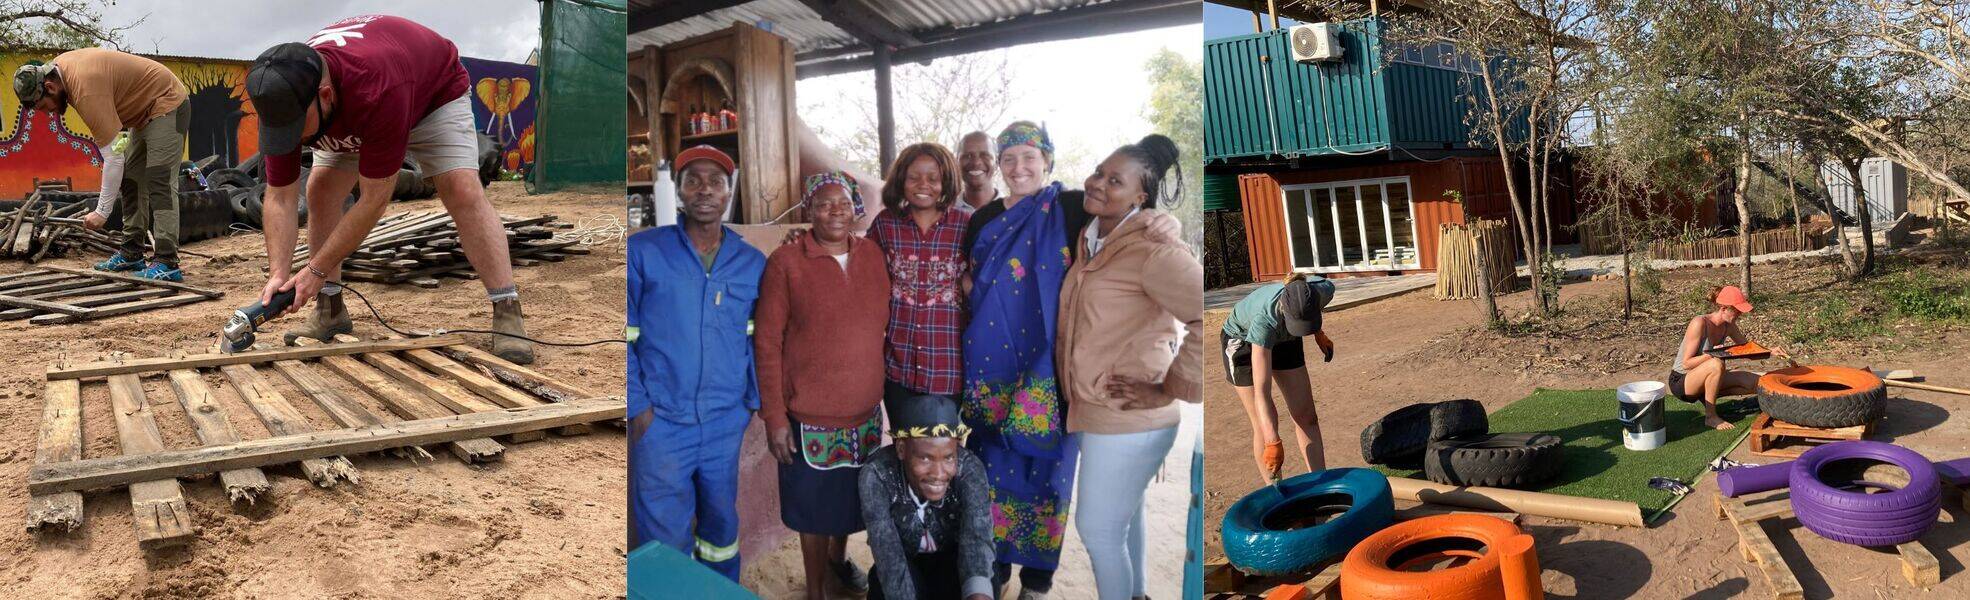 Freiwilligenarbeit im Social Entrepreneur Projekt in Südafrika